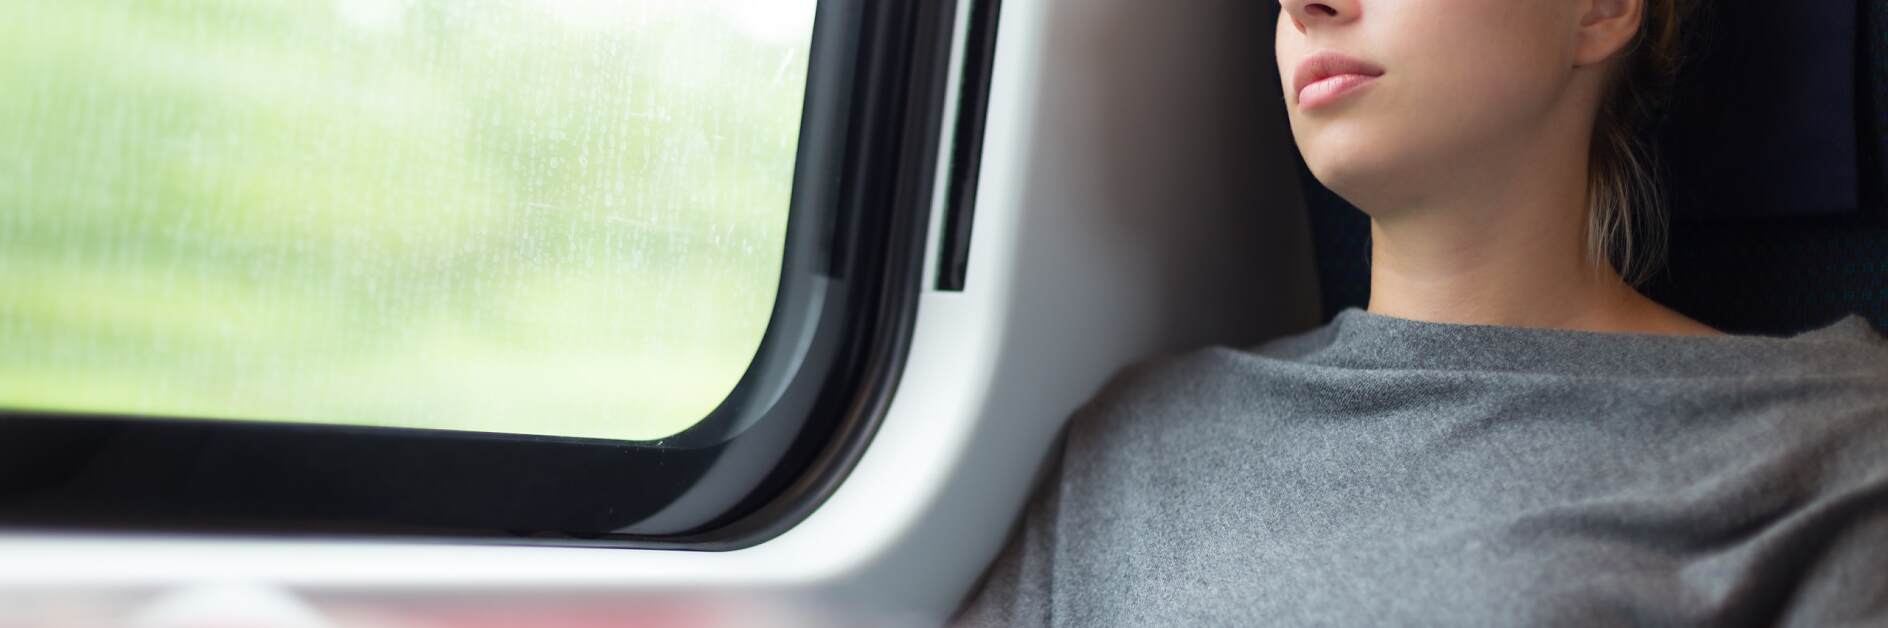 Femme faisant une sieste dans un train